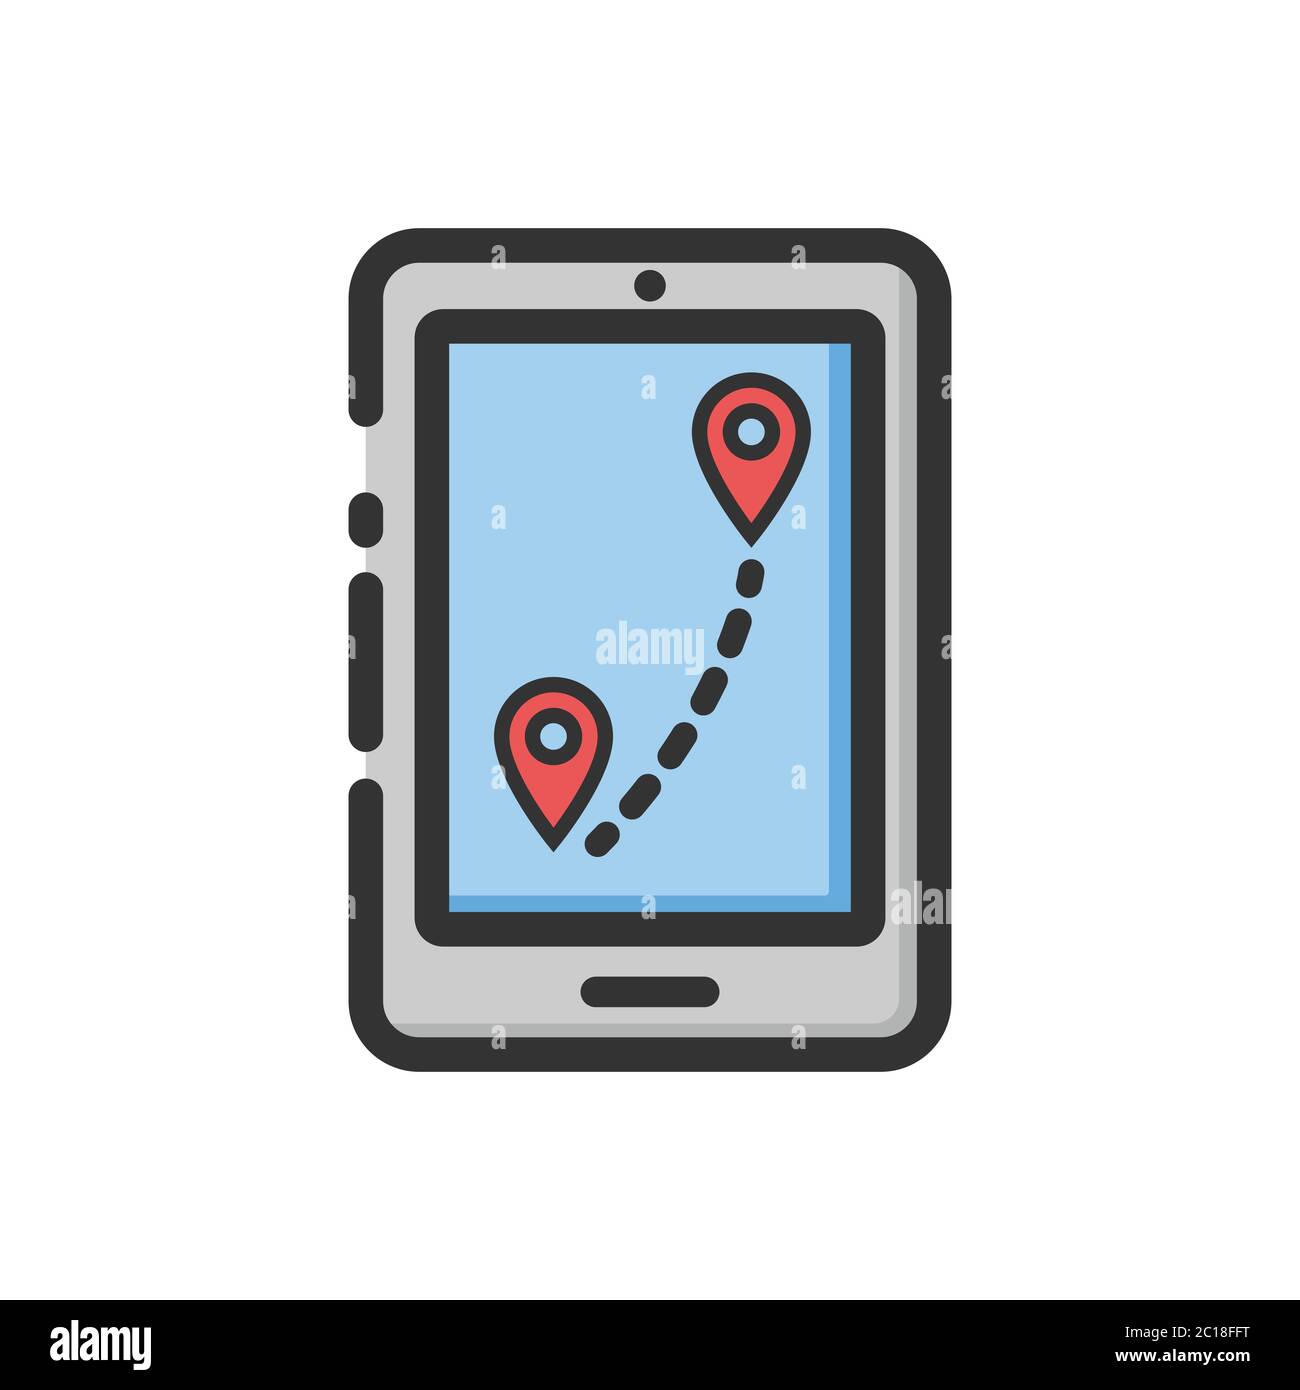 Suchen Sie eine Ortsrichtung mit der Locator-App im Smartphone. Geeignet für Vektordarstellung des Kartenlesfeldes zur Lokalisierung einer genauen Position aus einem Bereich. Stock Vektor